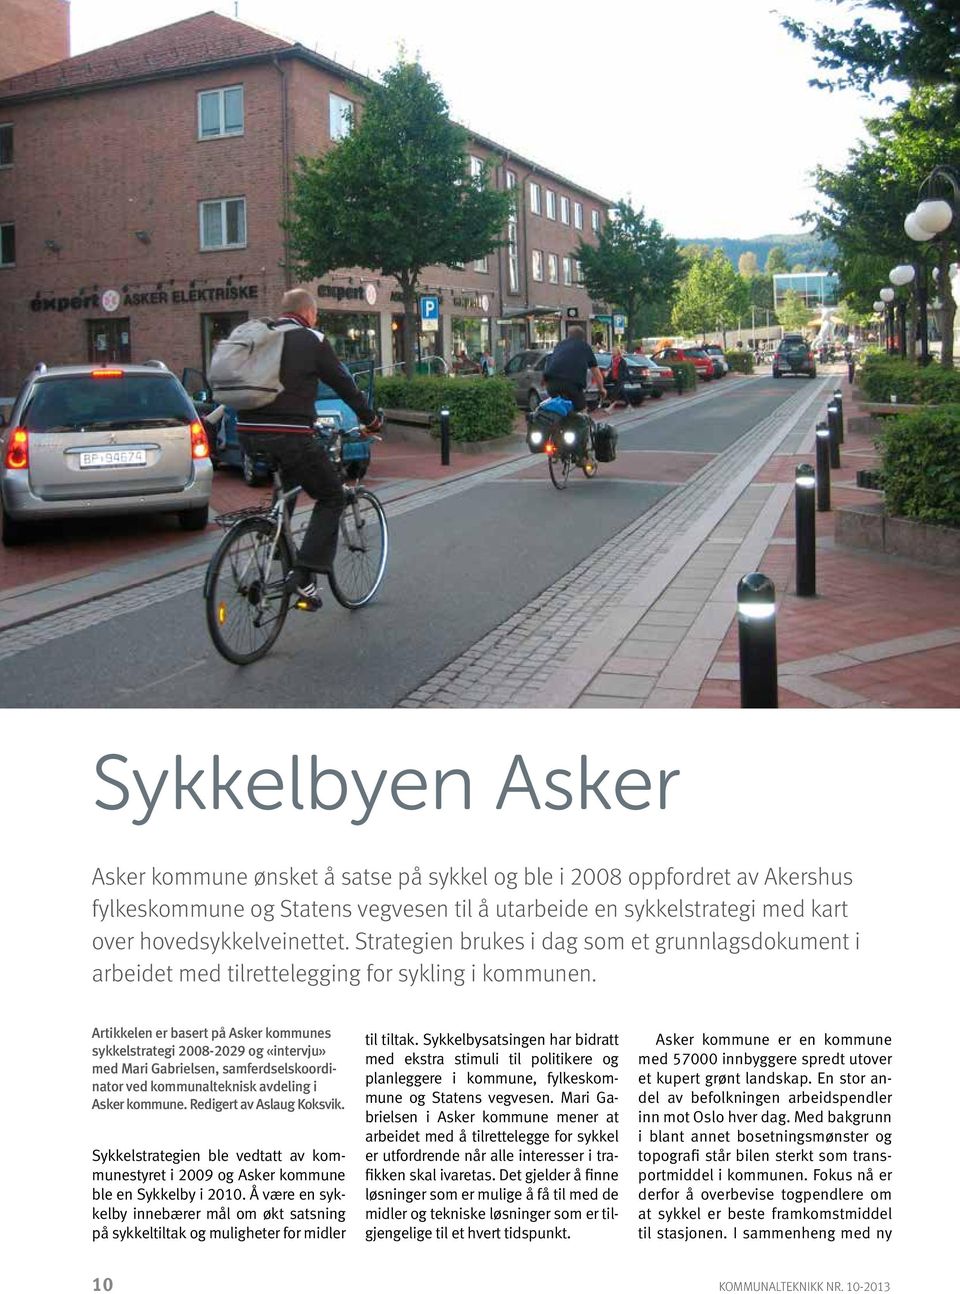 Artikkelen er basert på Asker kommunes sykkelstrategi 2008-2029 og «intervju» med Mari Gabrielsen, samferdselskoordinator ved kommunalteknisk avdeling i Asker kommune. Redigert av Aslaug Koksvik.